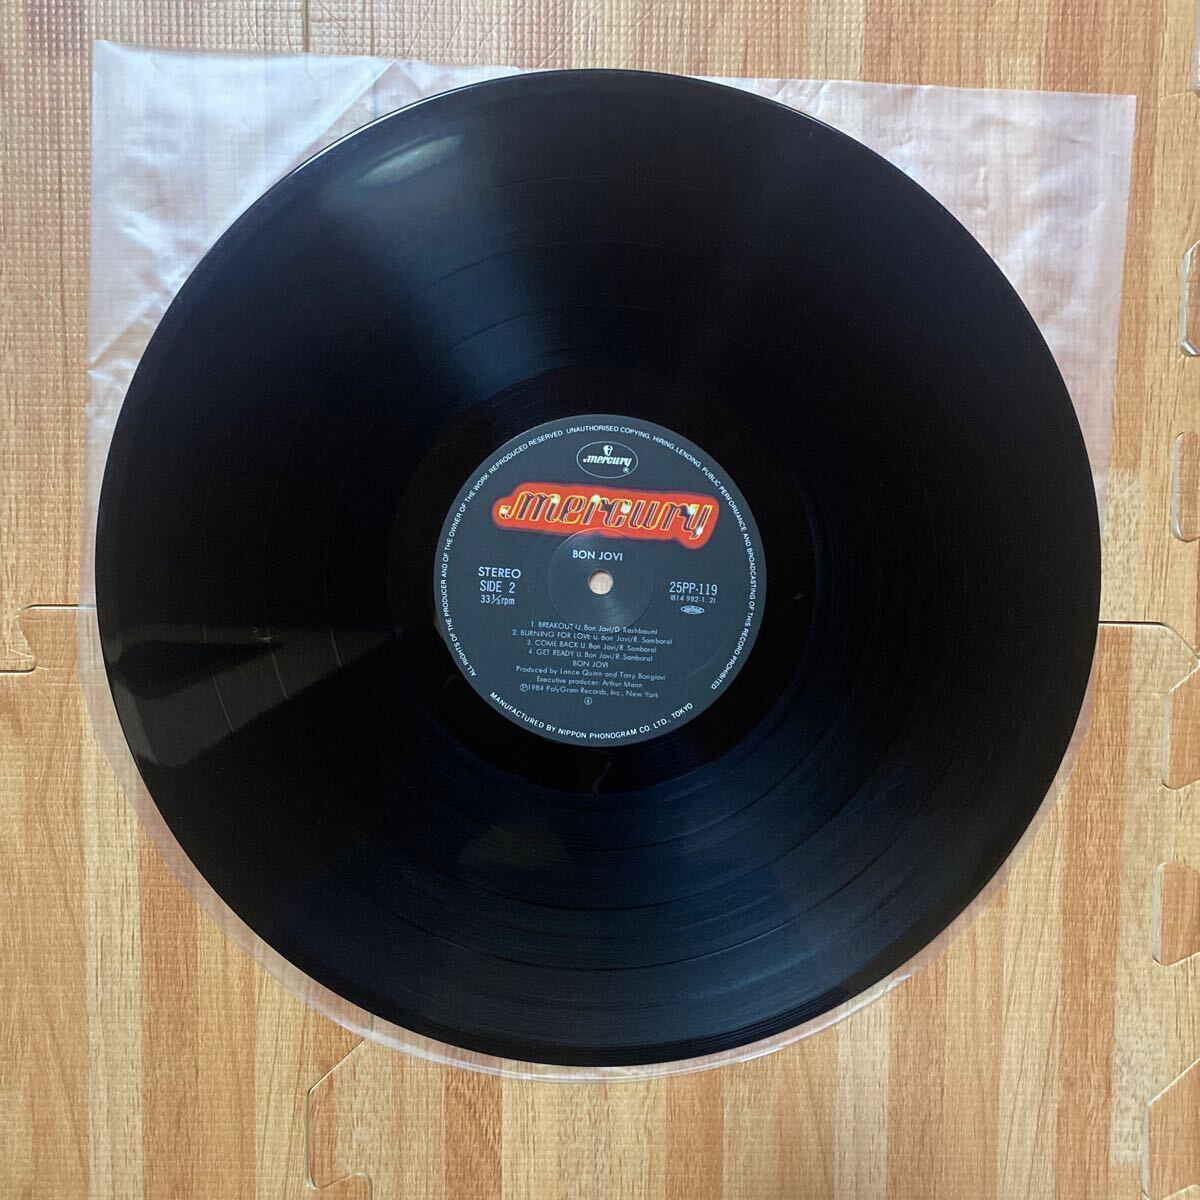 Bon Jovi ボン・ジョヴィ夜明けのランナウェイ RUNAWAY レコード LP 帯付き OBI 25PP-119_画像8